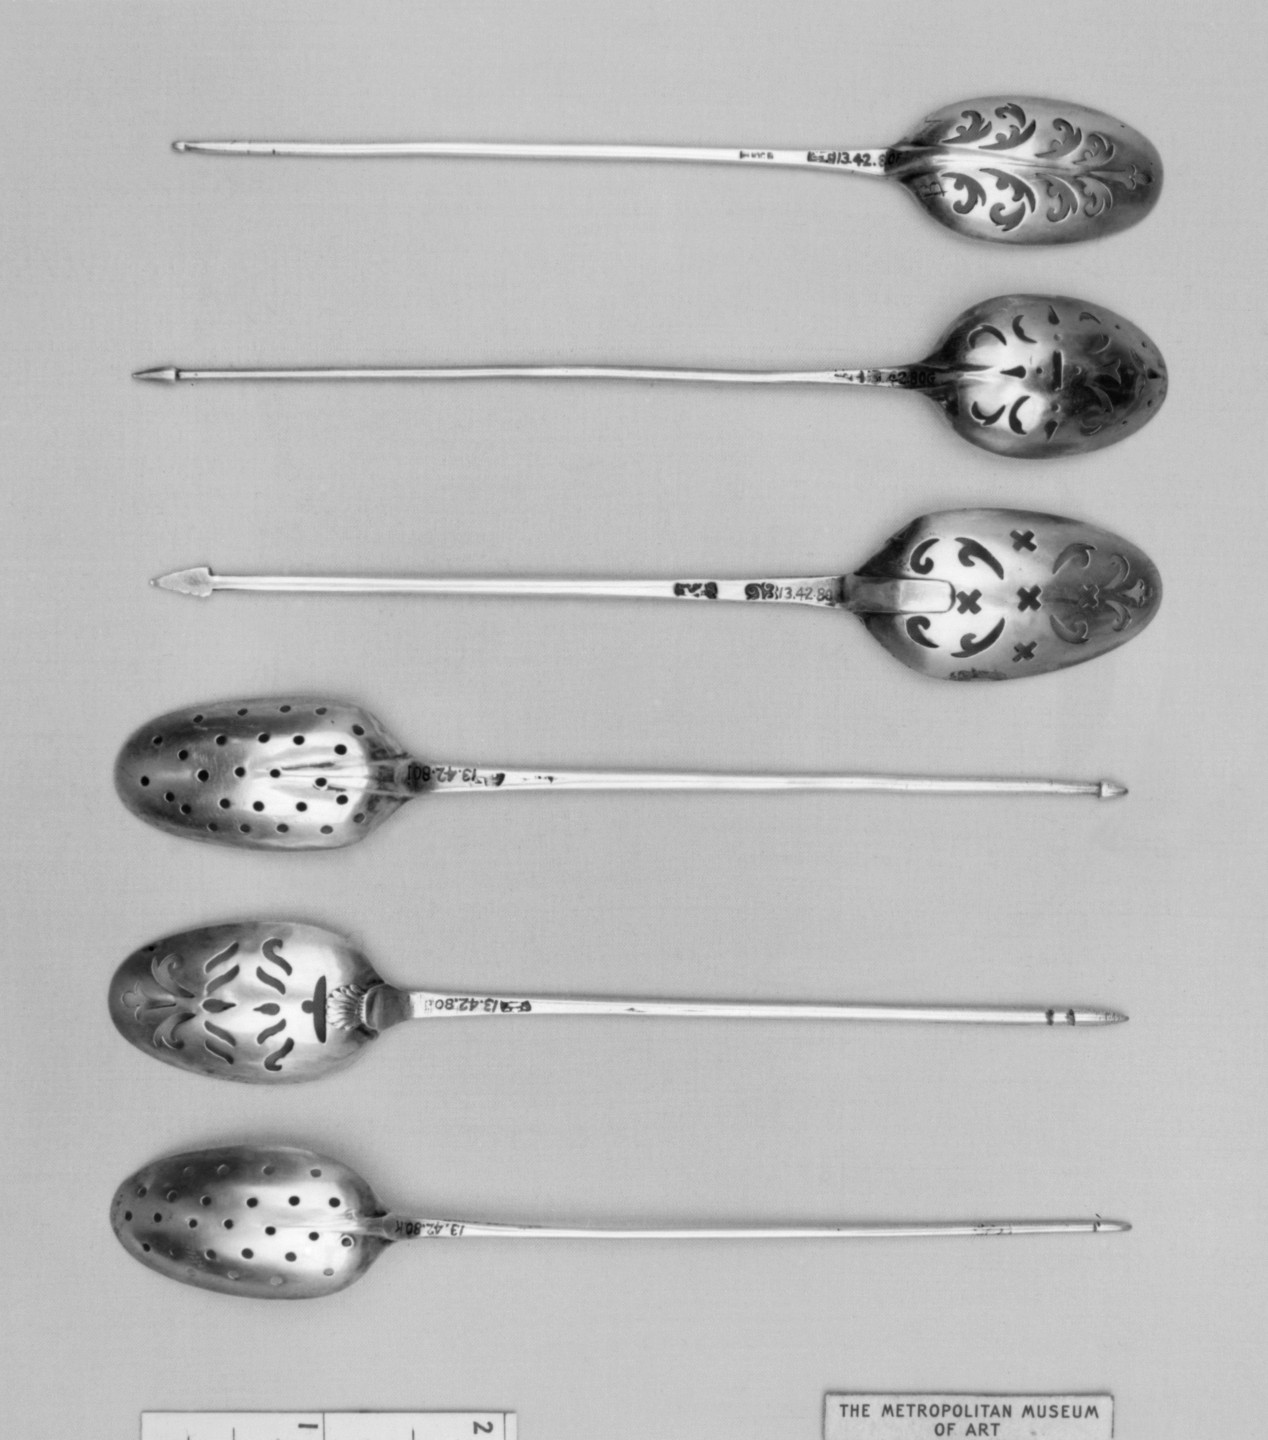 File:Strainer spoon MET 15430.jpg - Wikipedia